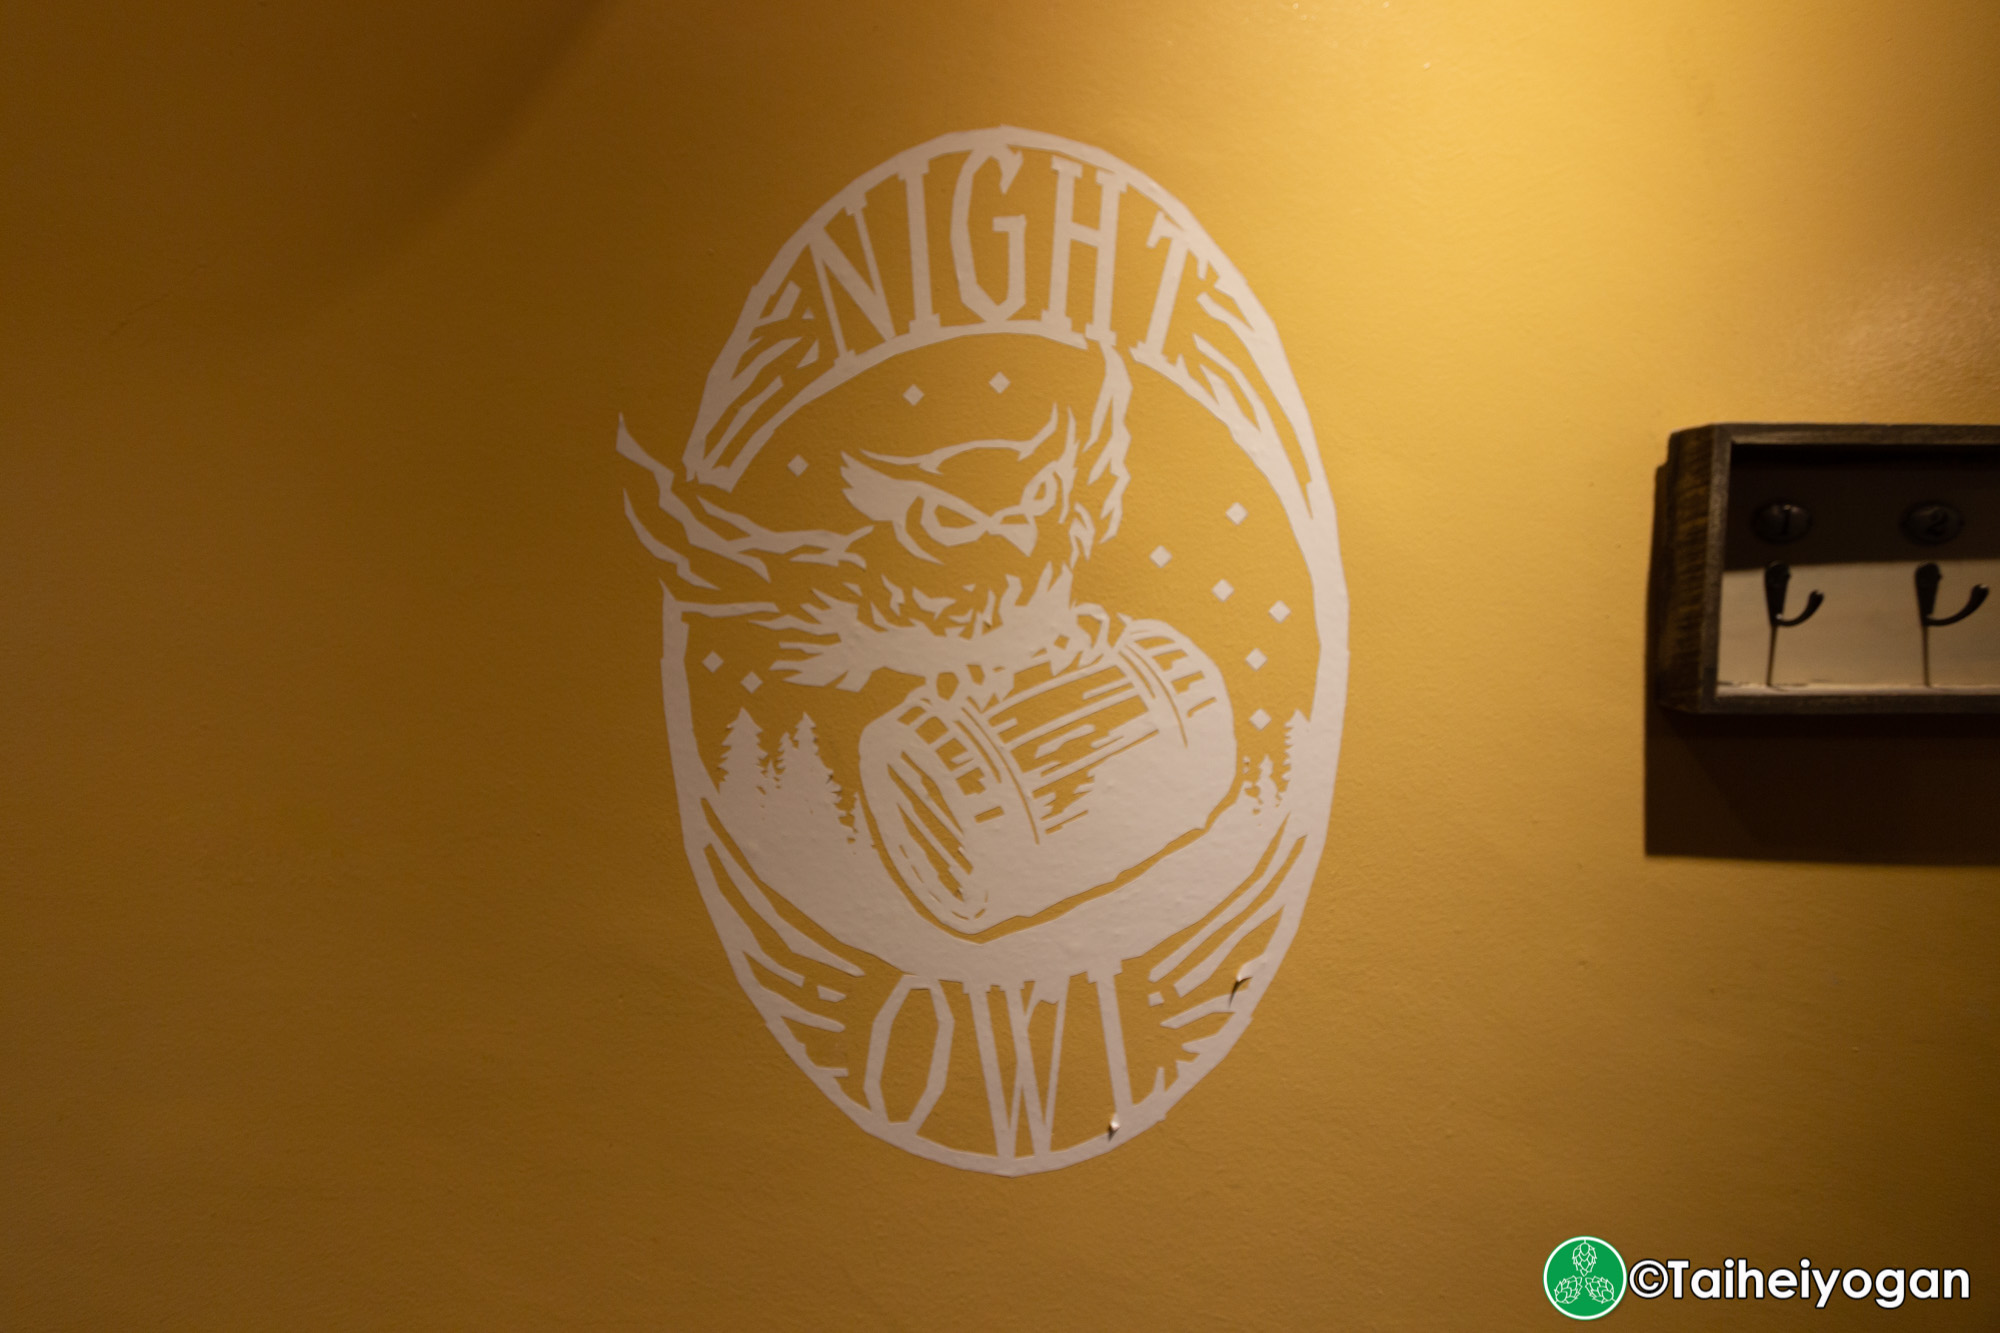 Liquor Shop NIGHT OWL - Interior - Logo